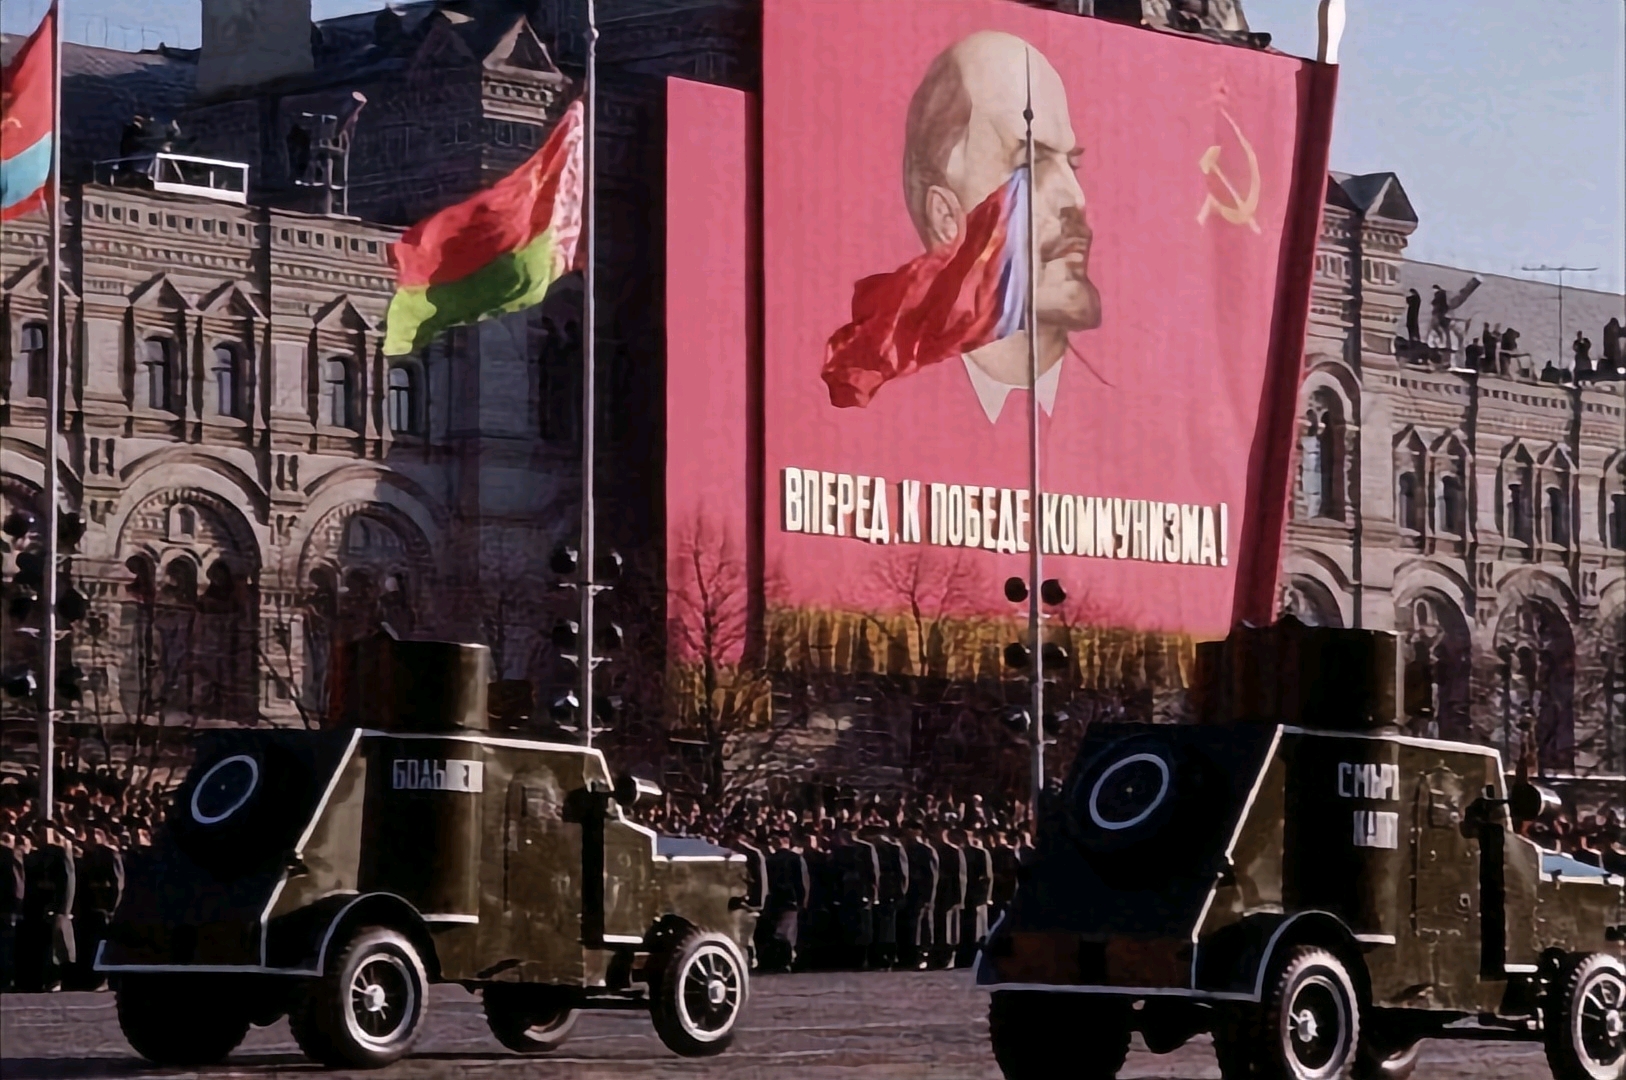 1945年苏联红场阅兵仪式1视频素材,历史军事视频素材下载,高清1920X1080视频素材下载,凌点视频素材网,编号:661194